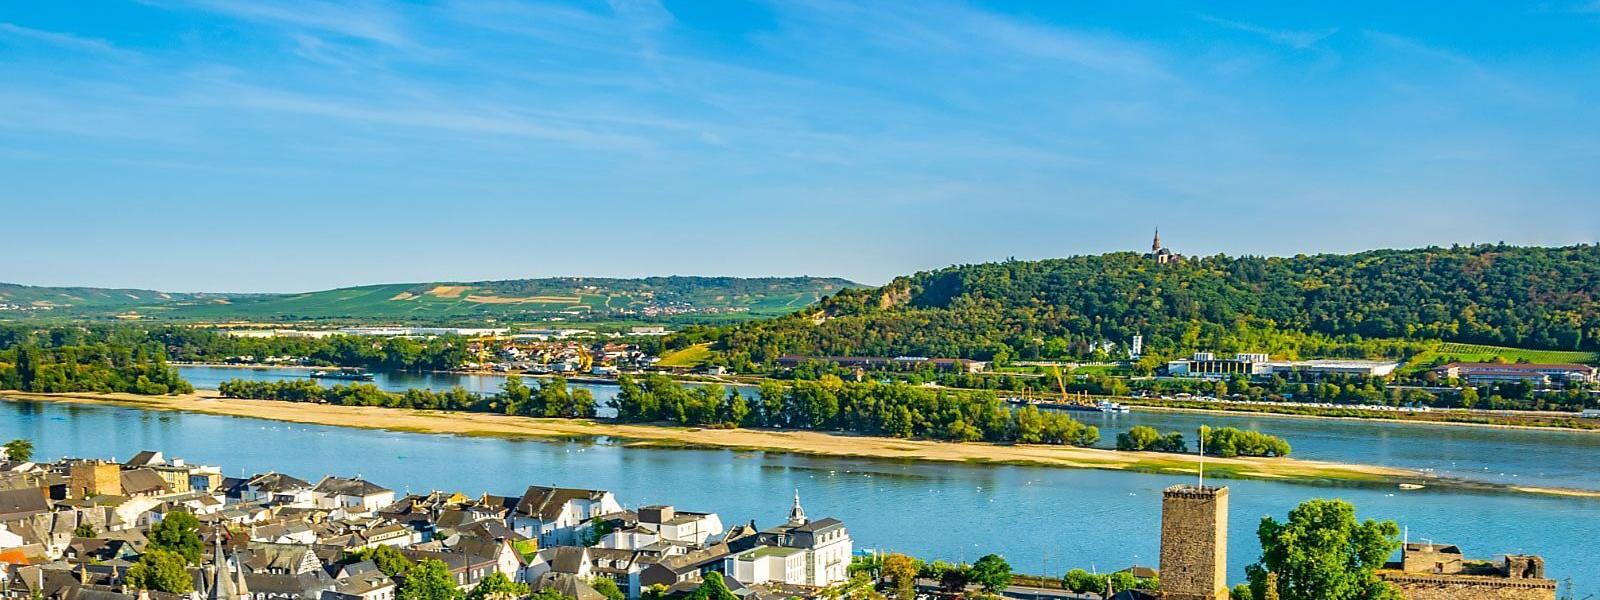 Luxus Ferienhäuser und Ferienwohnungen in Rheinland-Pfalz - BELLEVUE Ferienhaus